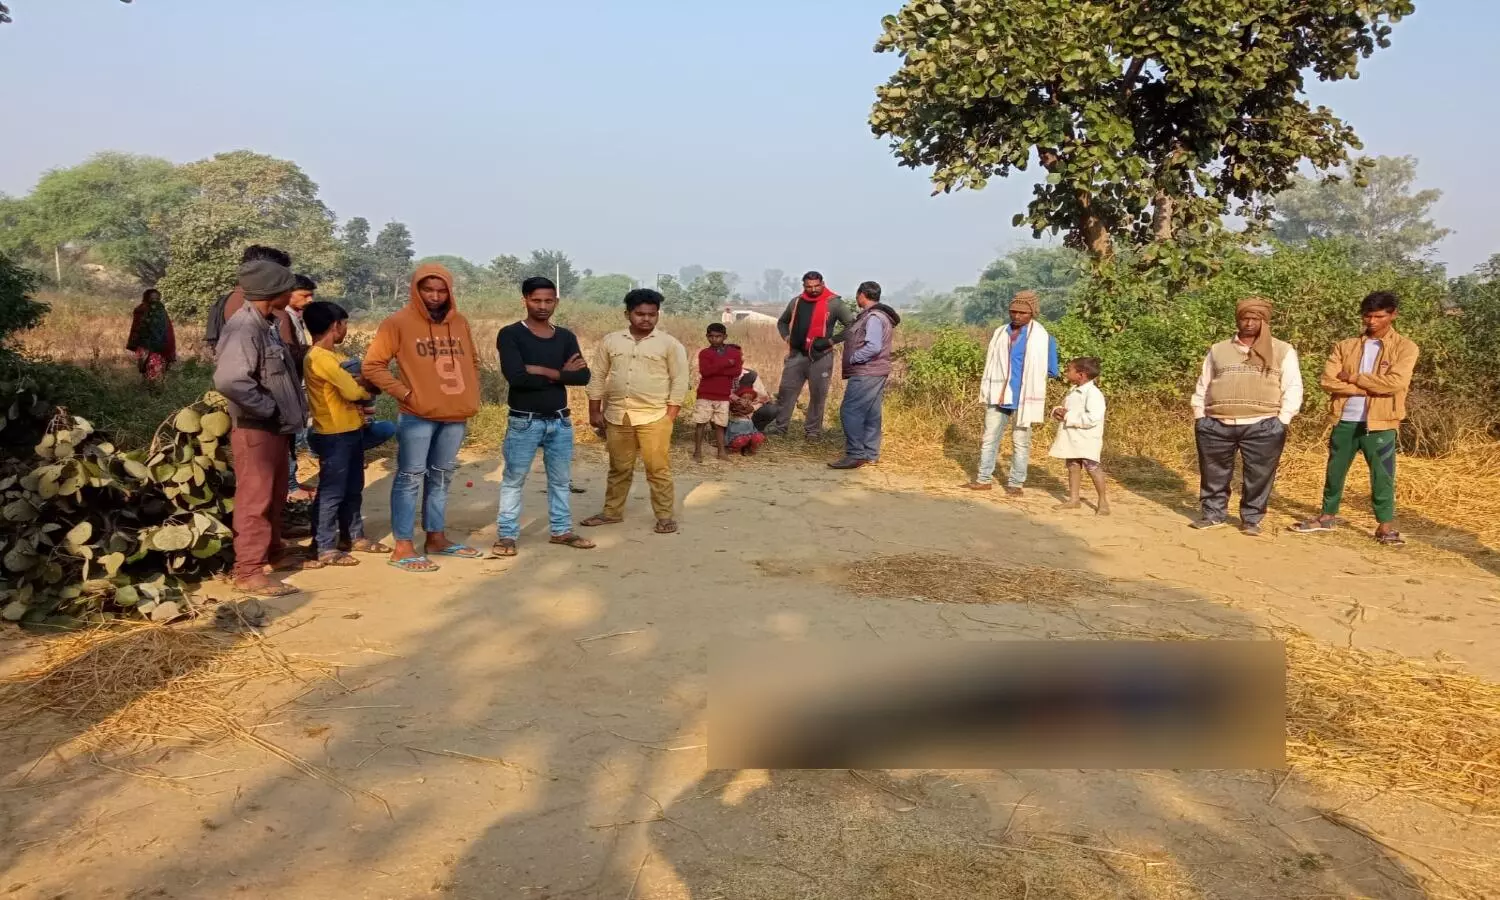 Sonbhadra news: बंधी में उतराती मिली लाश, मच गया हड़कंप, पत्नी की पहले हो चुकी है मौत